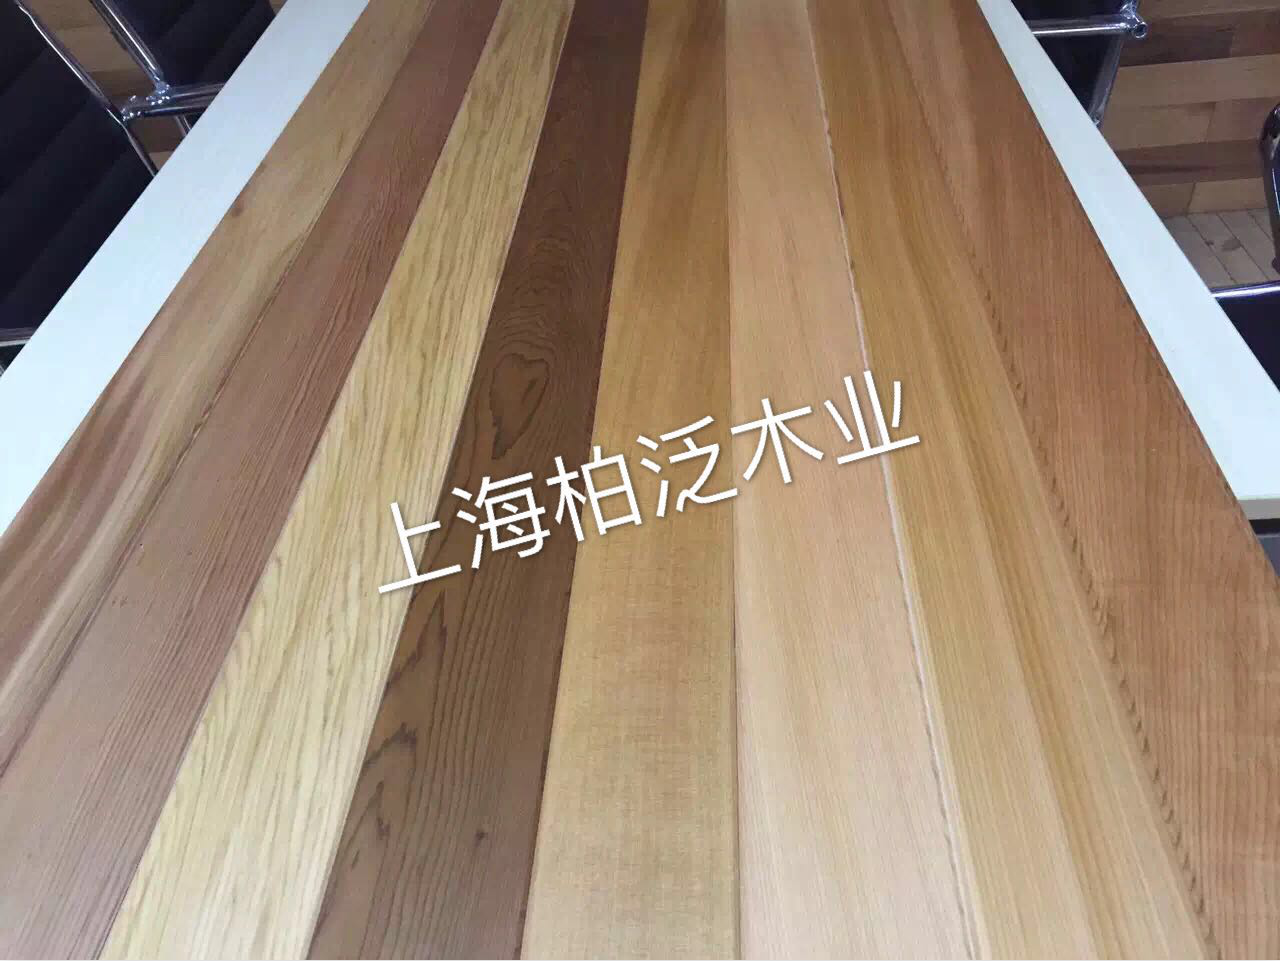 上海加拿大红雪松-红雪松防腐木厂家-红雪松生产厂家